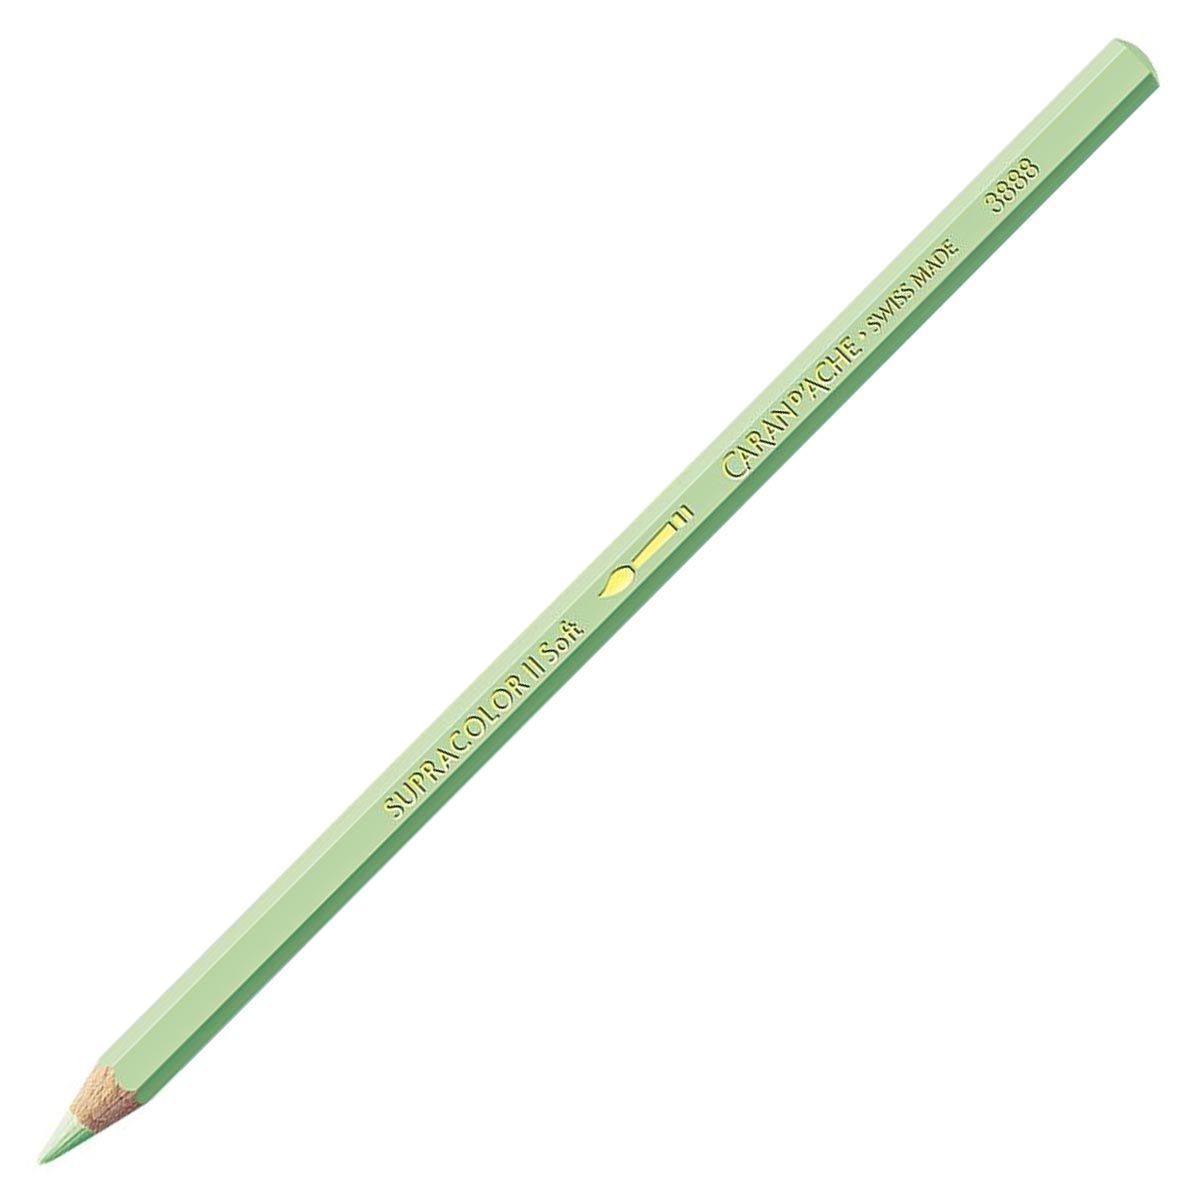 Caran d'Ache Supracolor ll Soft Aquarelle Pencil - Light Green 221